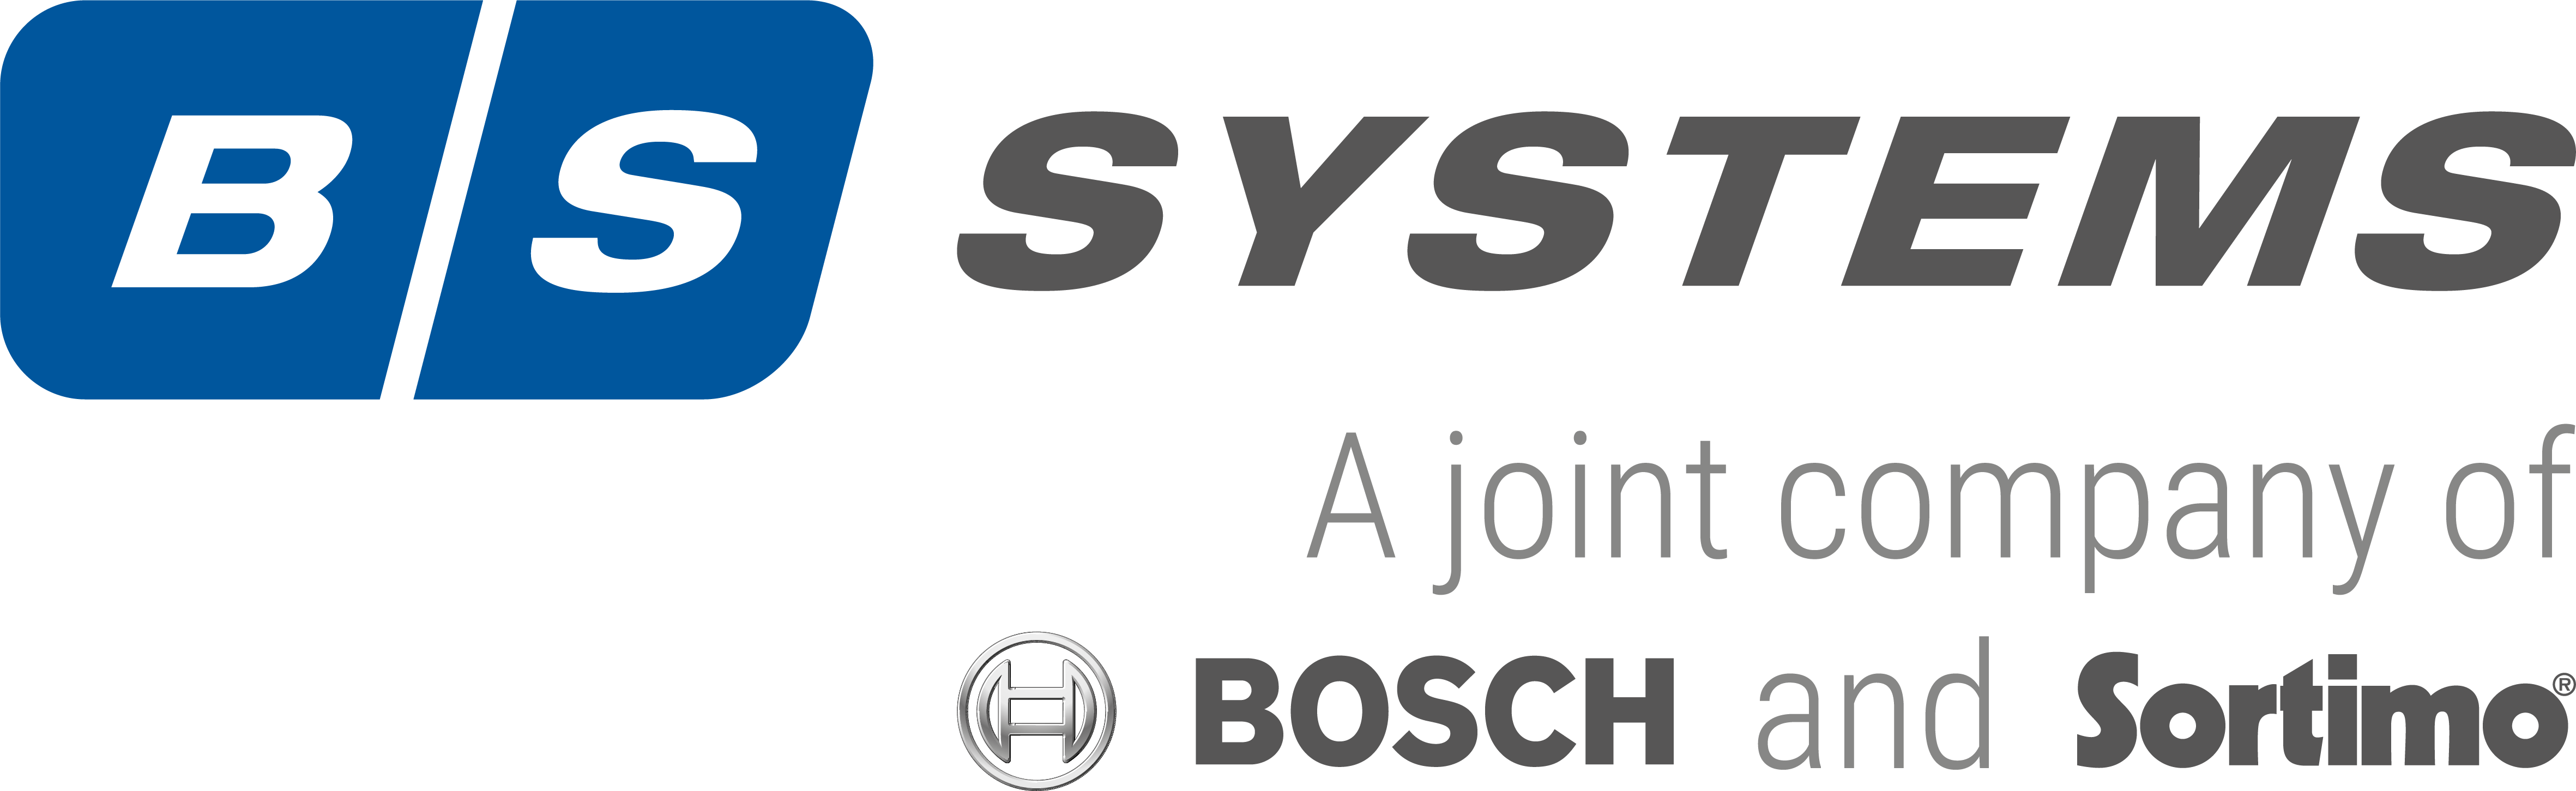 BS-Systems L-BOXX 136 Trennblech-Set 3F BSS